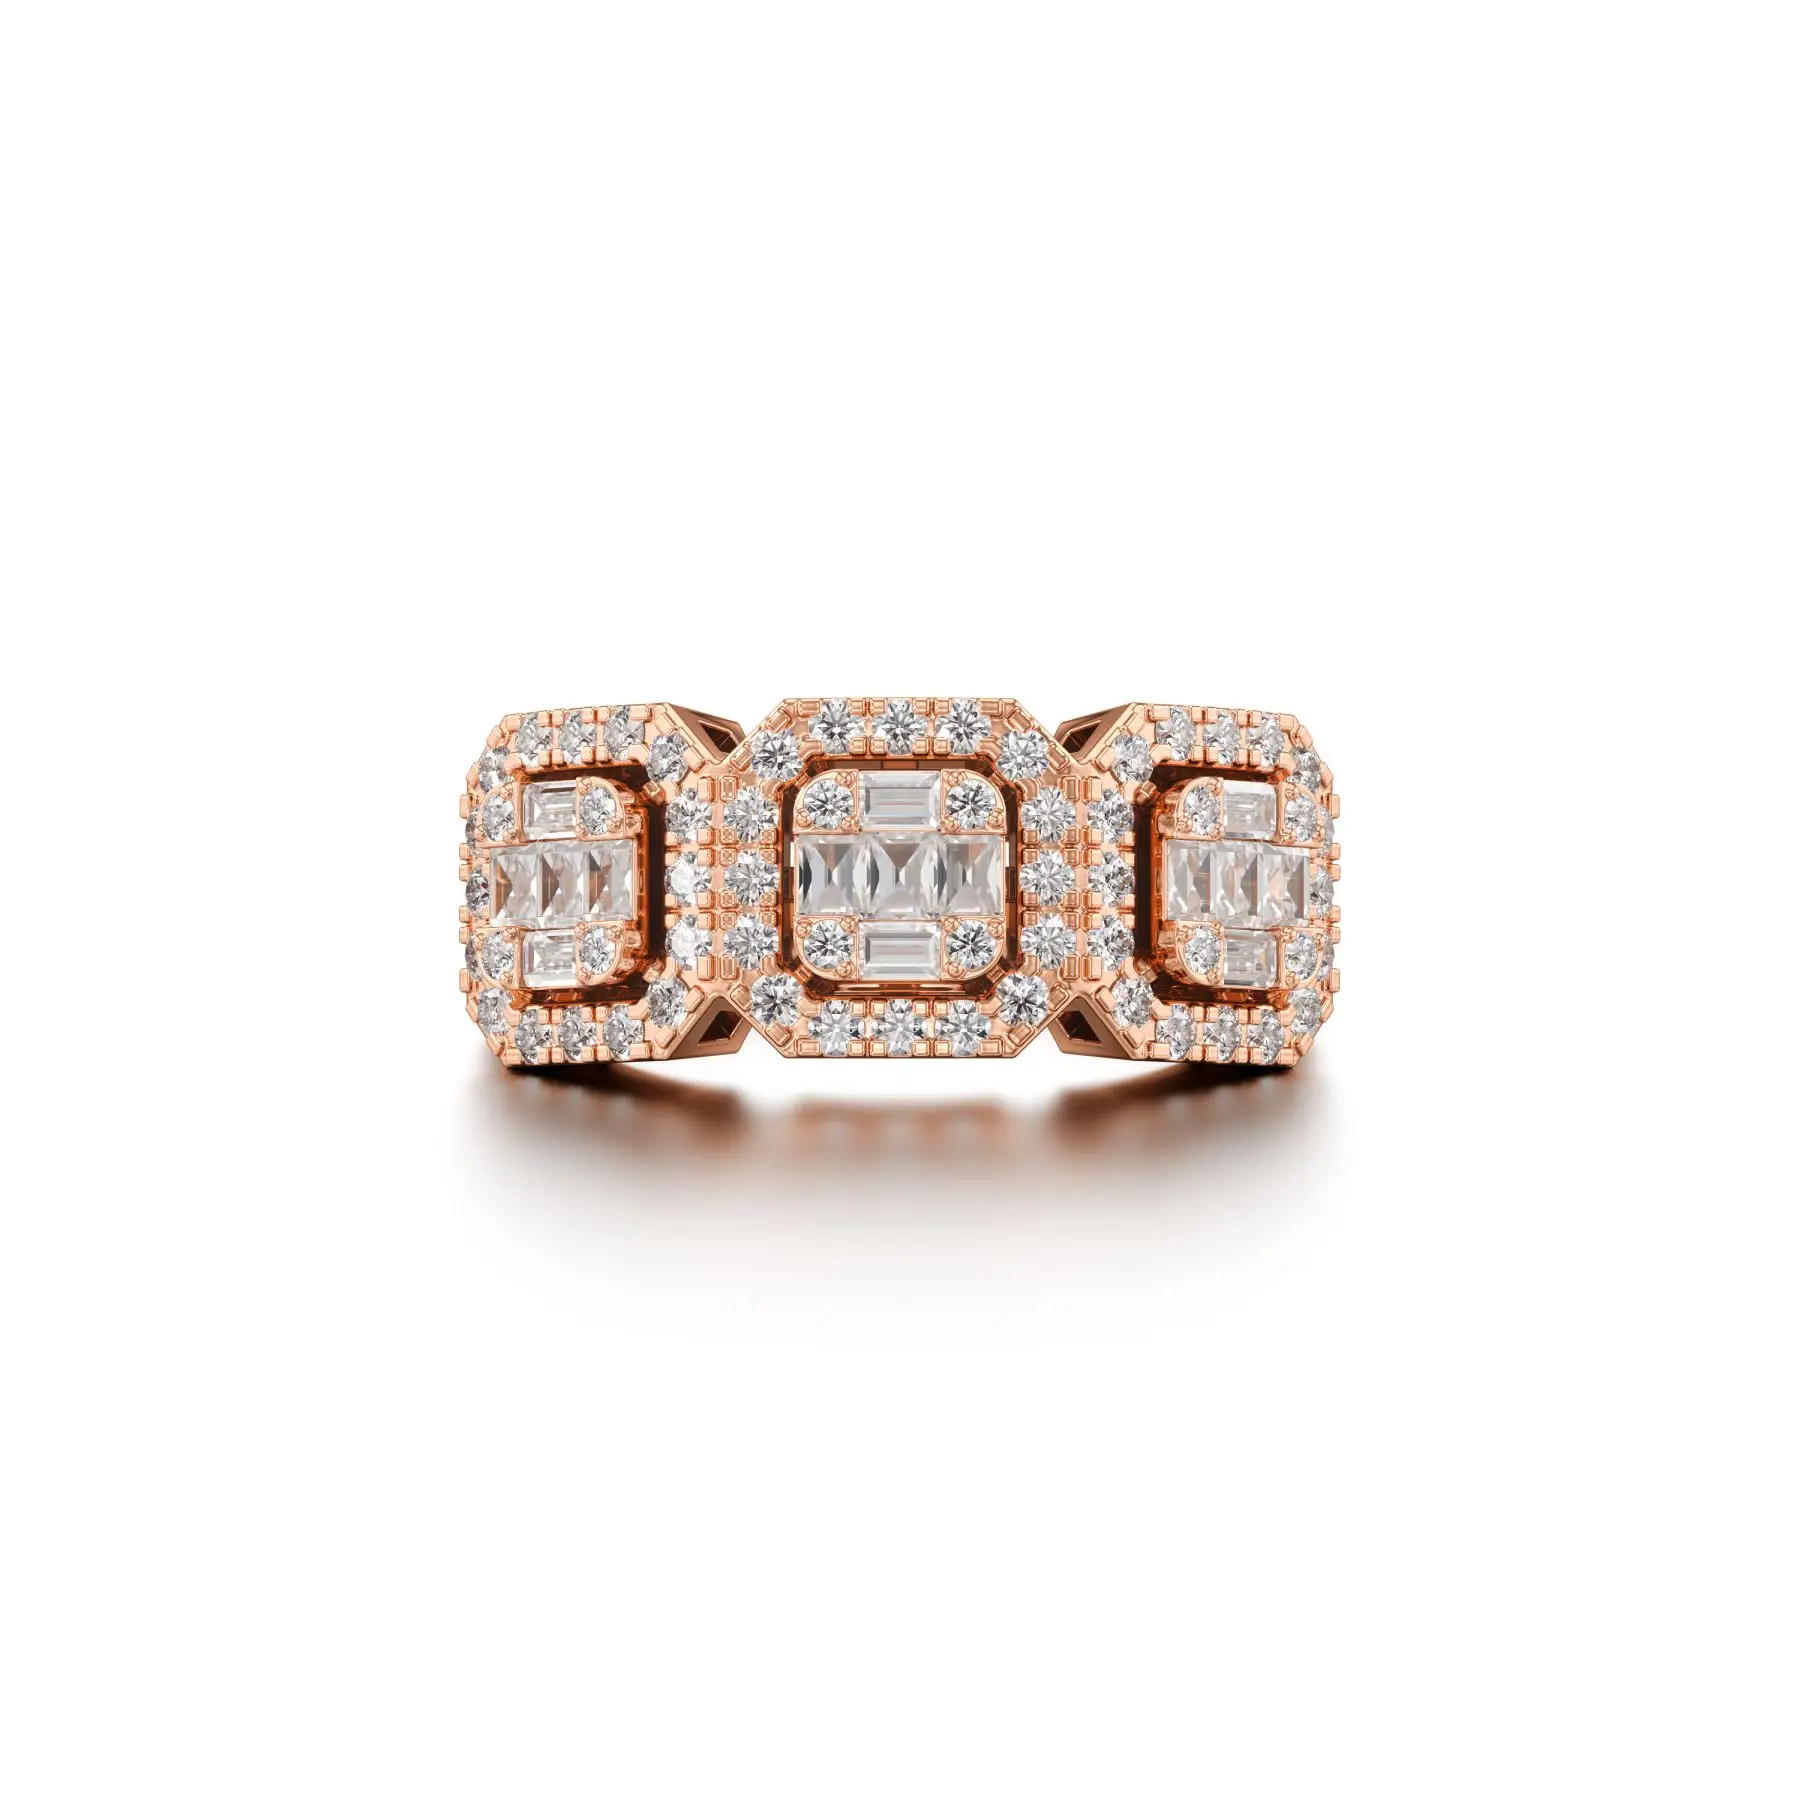 Geared Asscher Diamond Ring in Rose 14k Gold